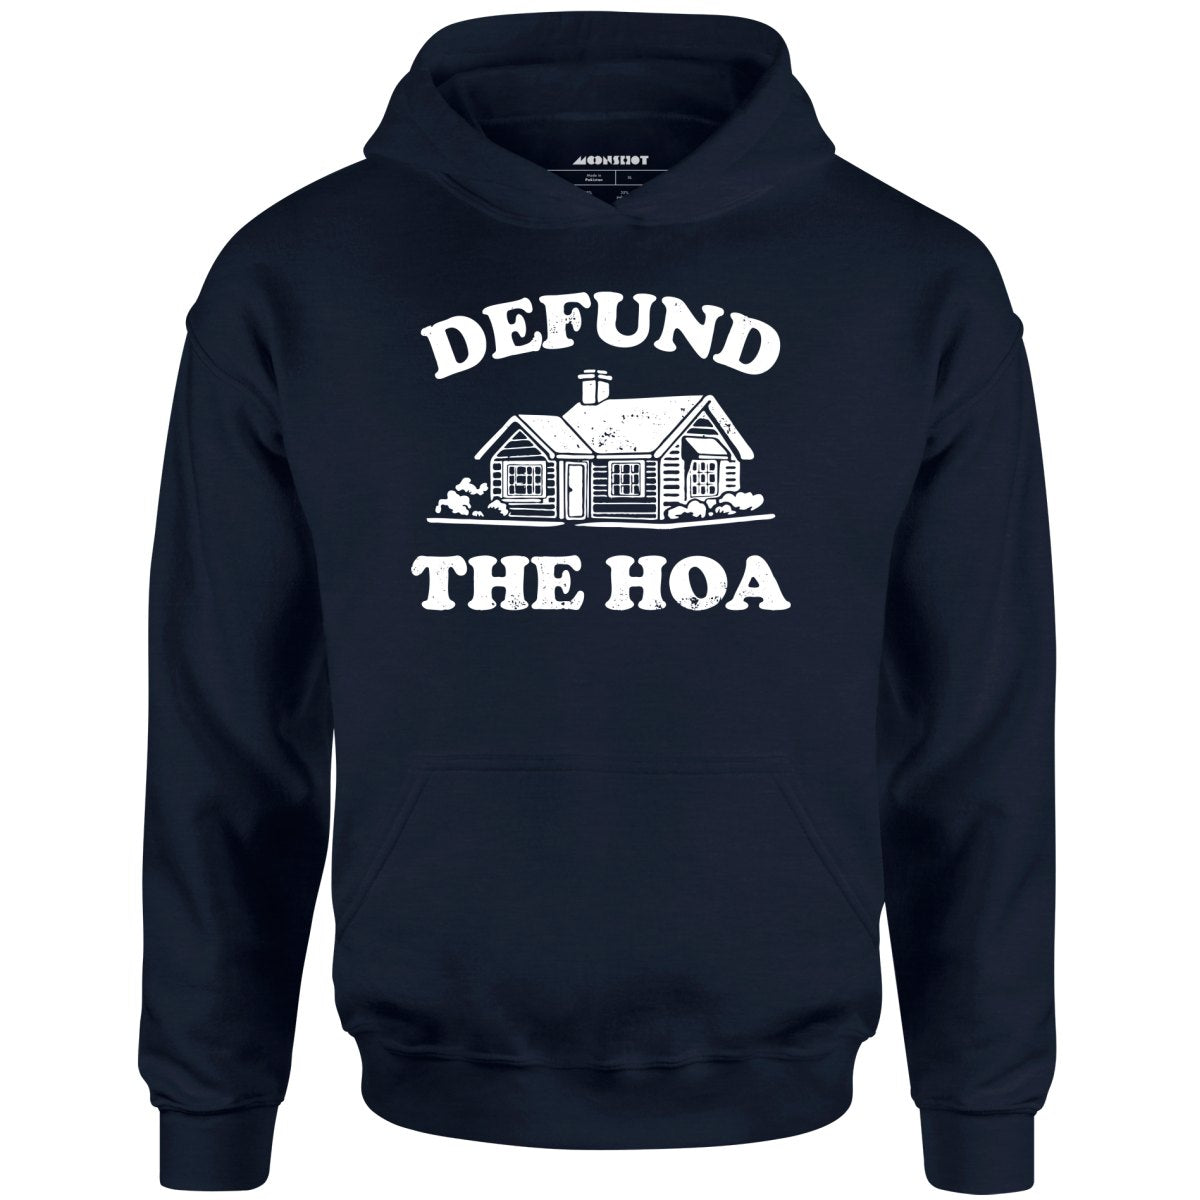 Defund the HOA - Unisex Hoodie